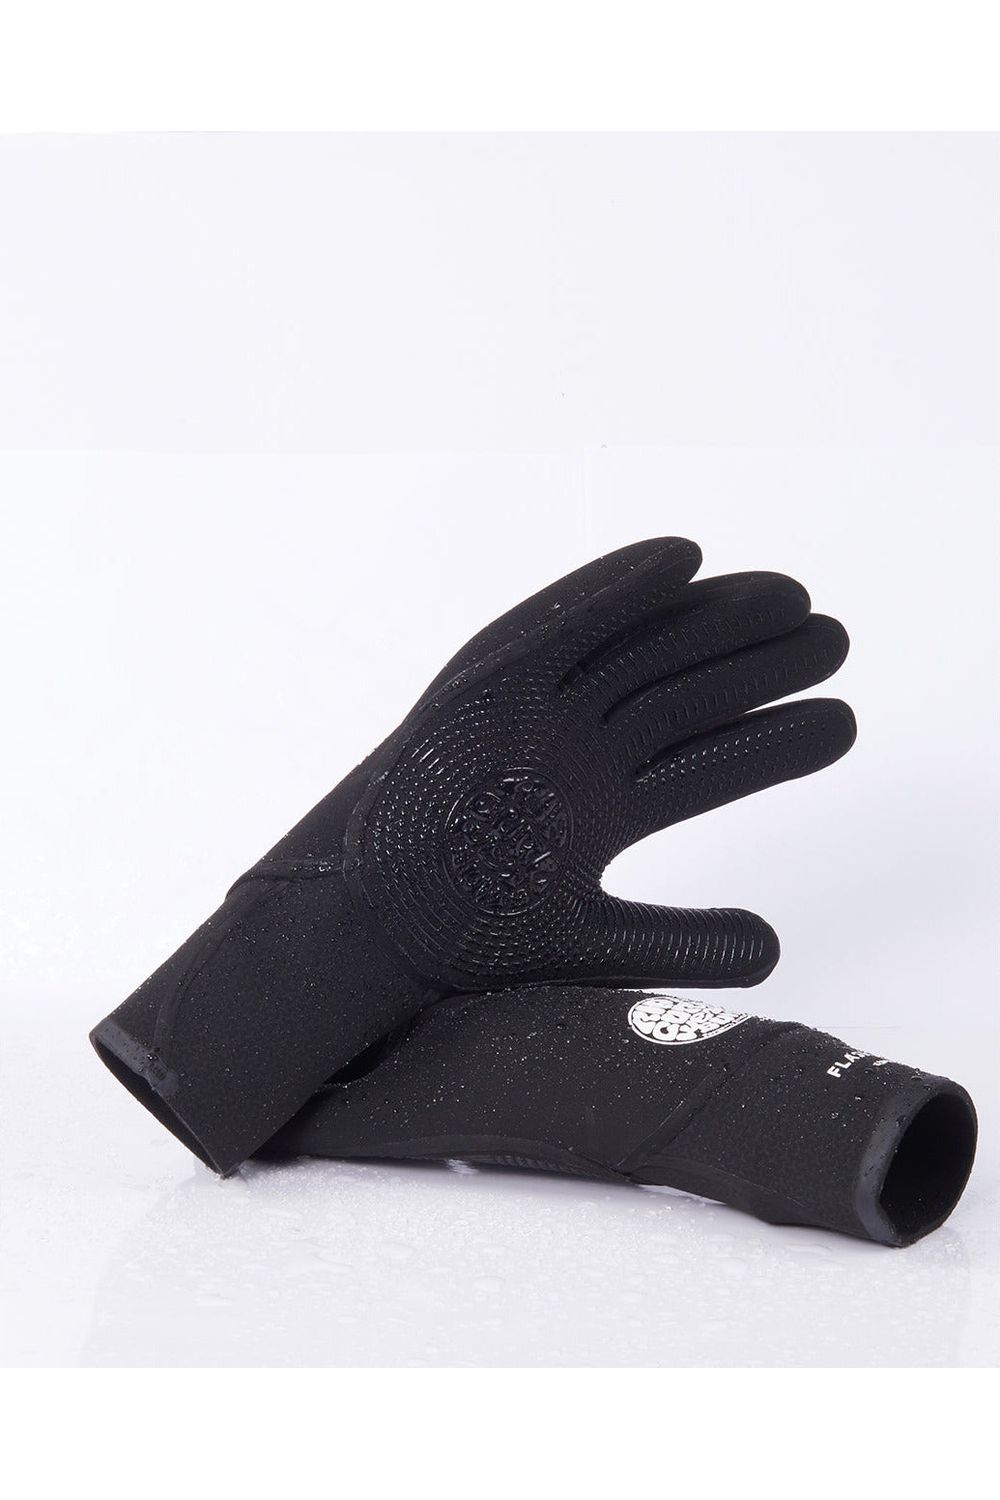 Flashbomb 3/2 5 Finger Gloves